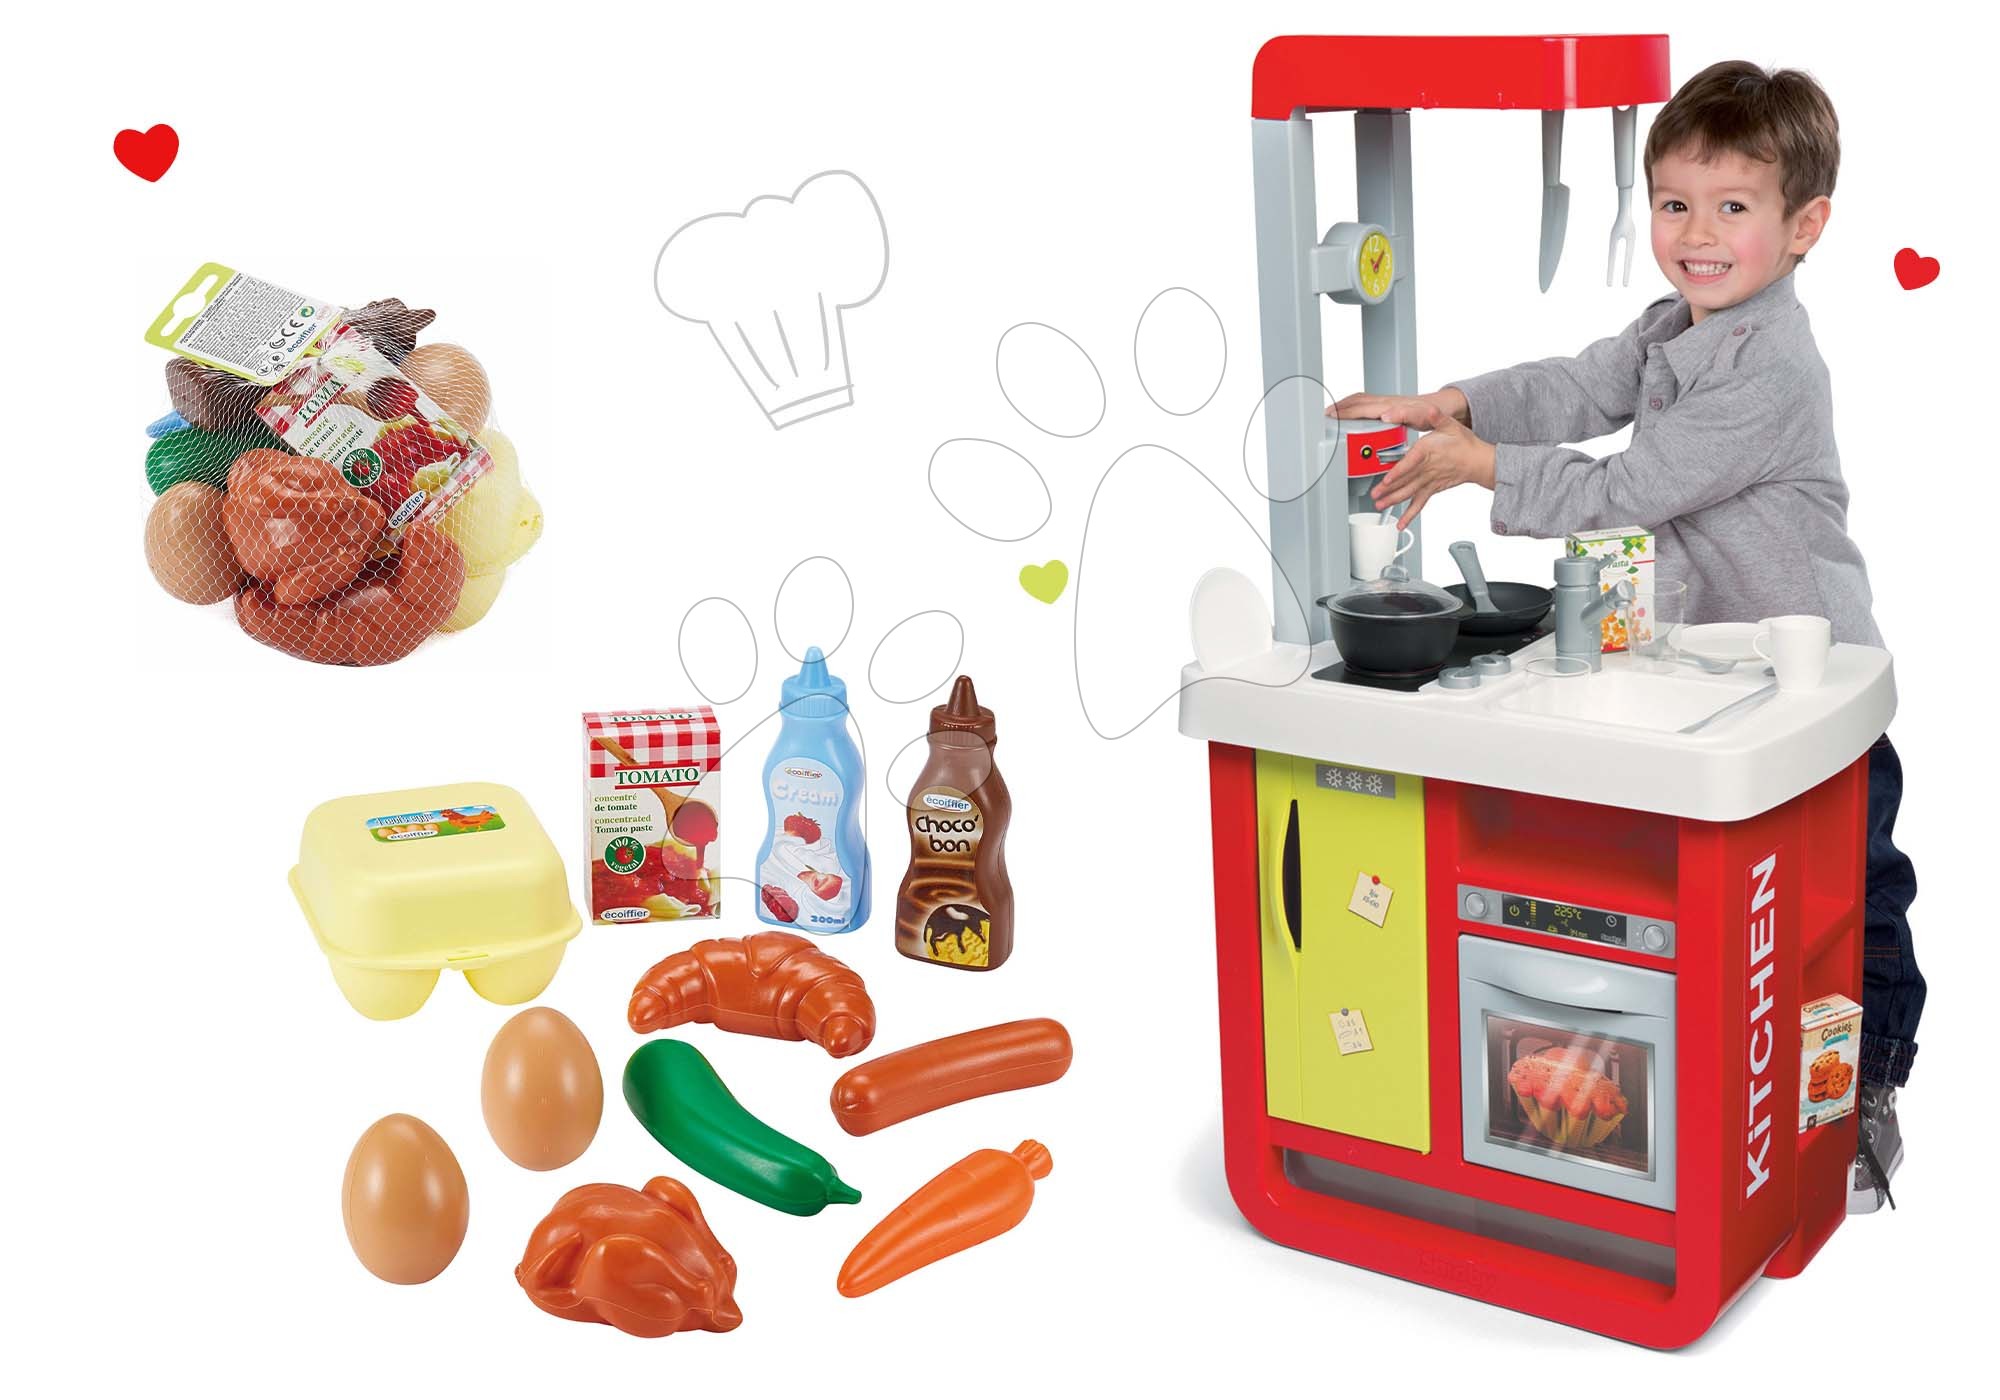 Cucina per bambini Cherry e alimenti giocattolo Smoby